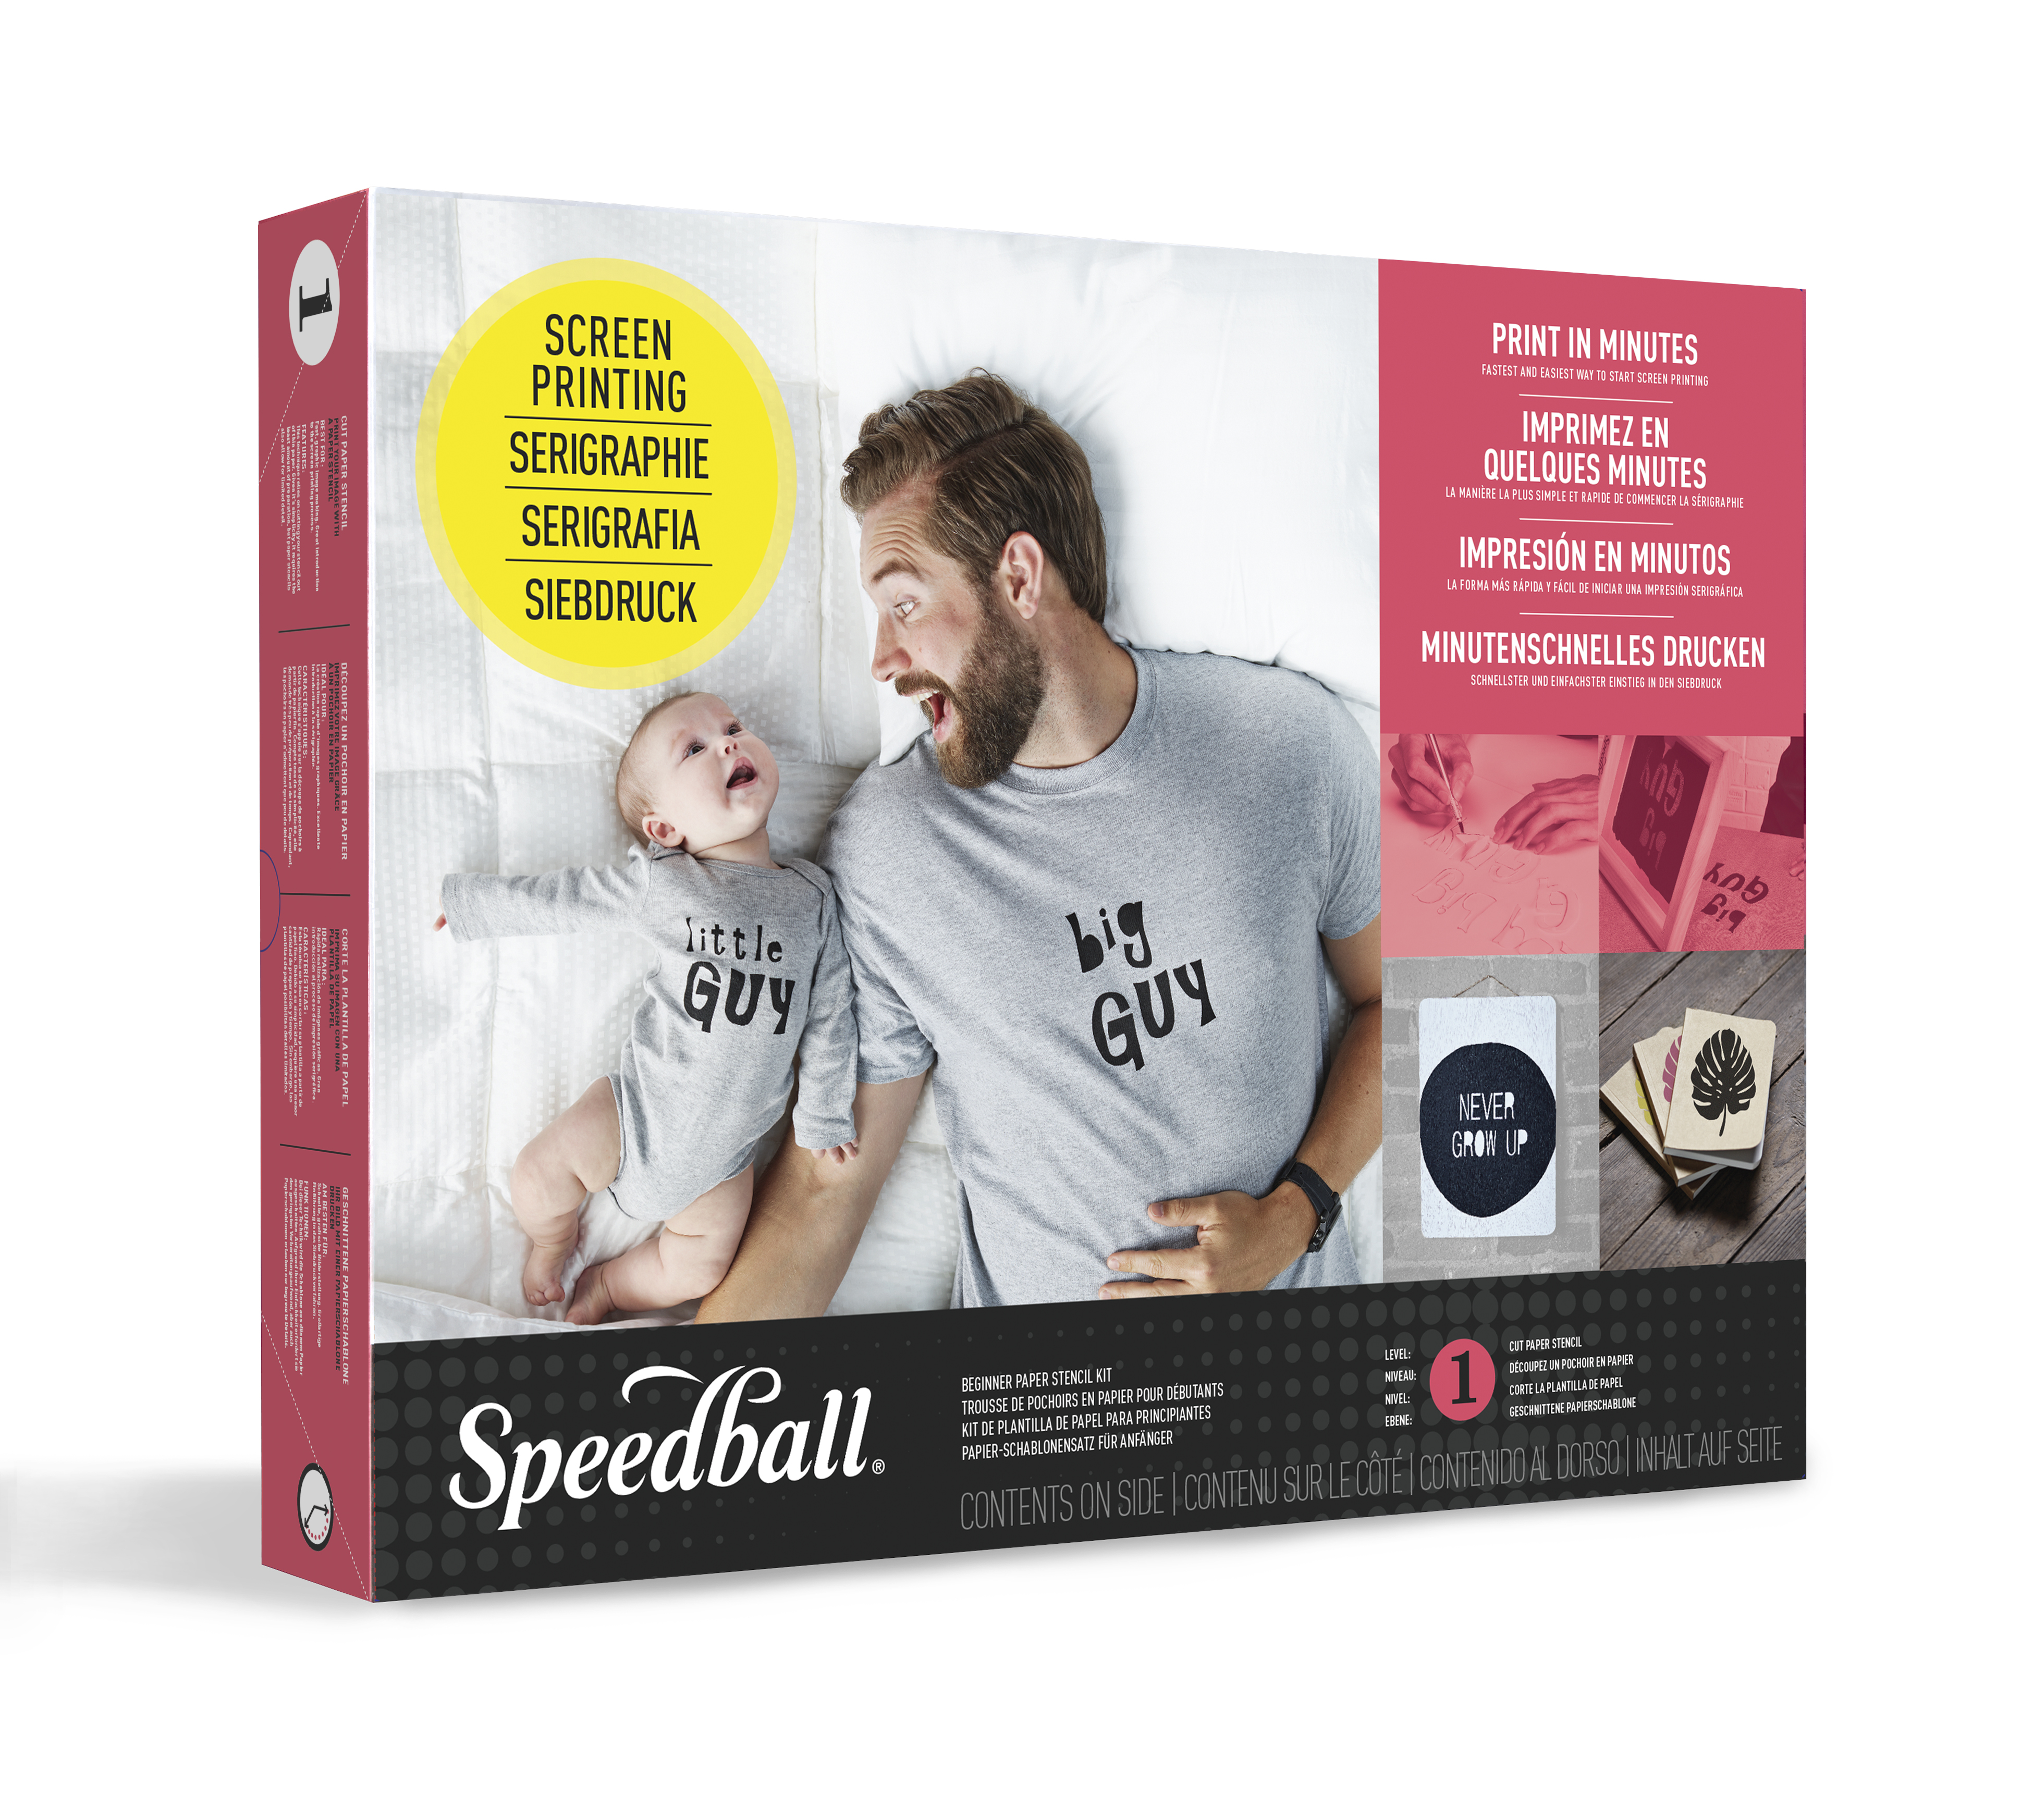 Speedball Intermediate Kit 